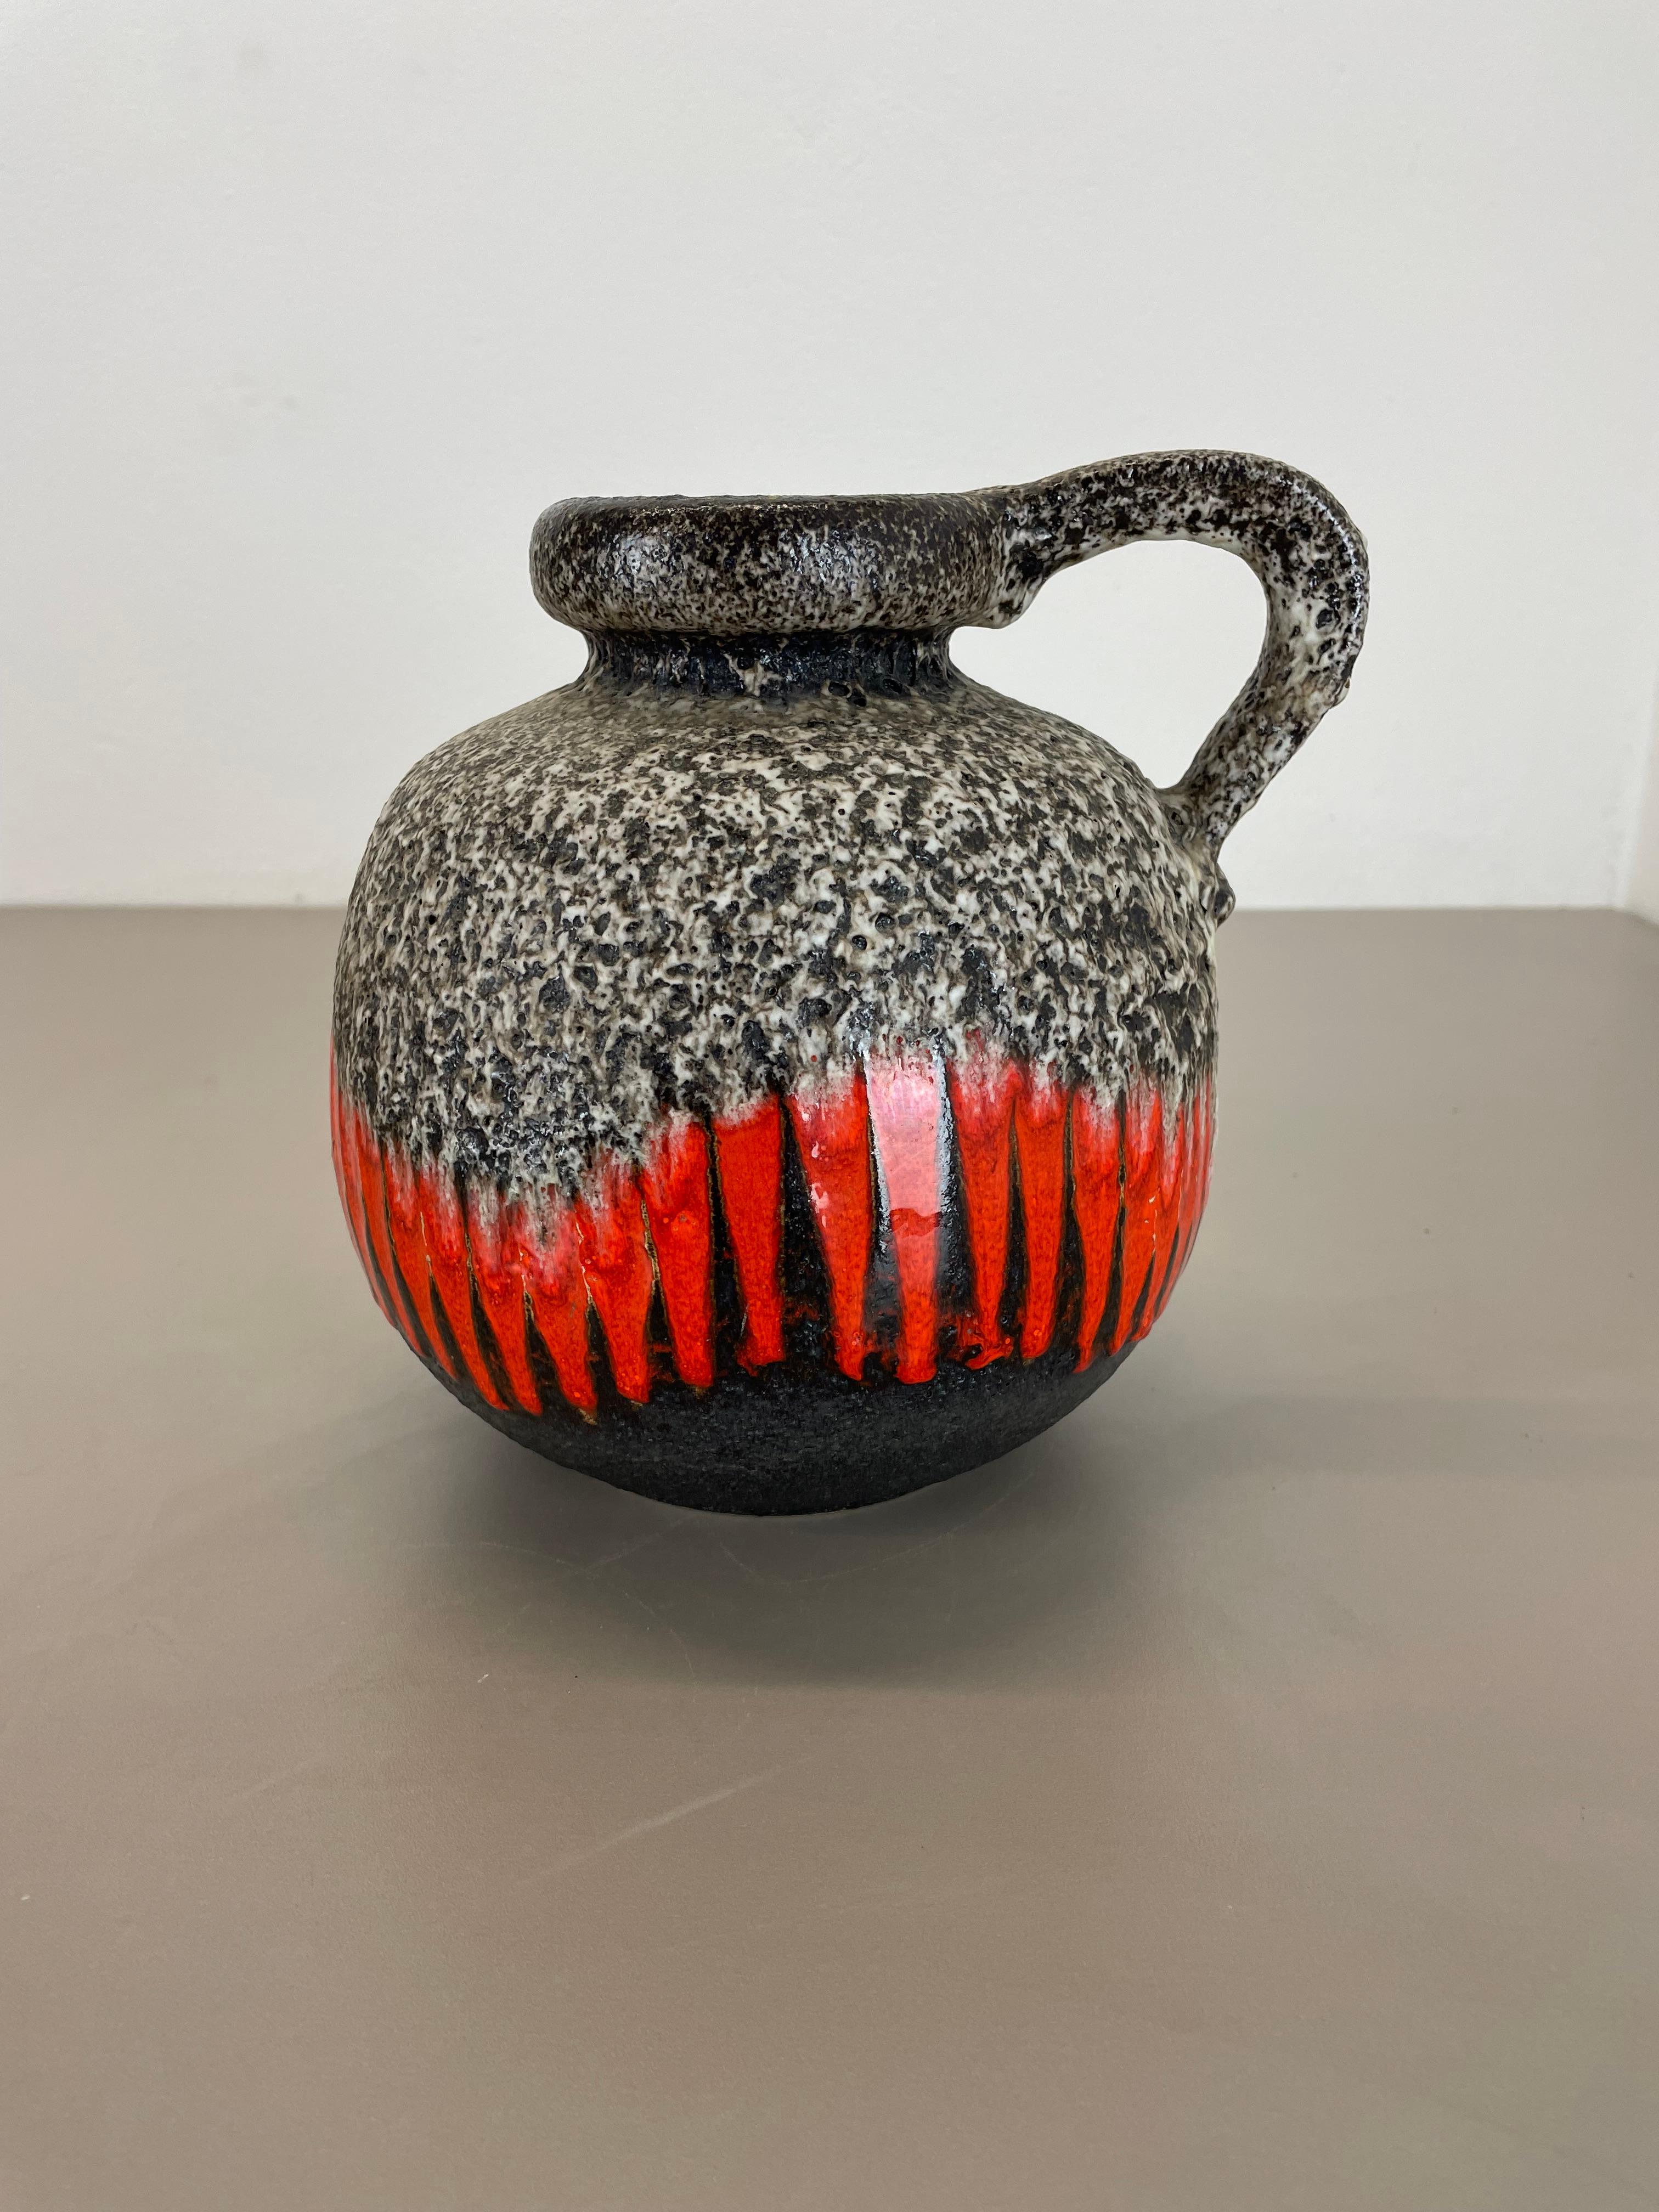 Artikel:

Fette Lava-Kunstvase ZIG ZAG



Produzent:

Scheurich, Deutschland



Jahrzehnt:

1970s




Diese originelle Vintage-Vase wurde in den 1970er Jahren in Deutschland hergestellt. Sie ist aus Keramik in fetter Lava-Optik mit abstrakter